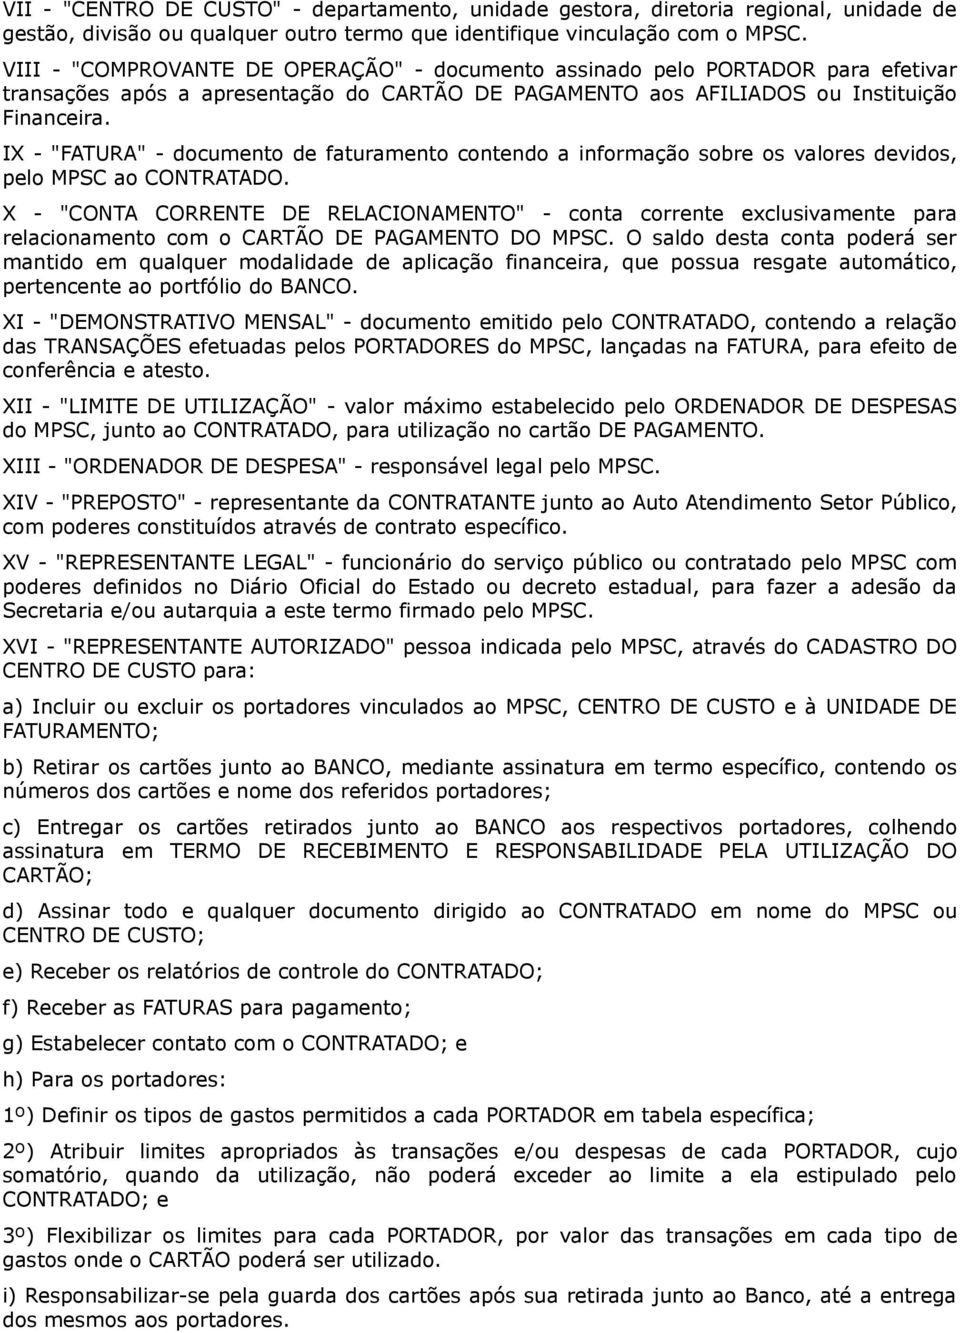 IX - "FATURA" - documento de faturamento contendo a informação sobre os valores devidos, pelo MPSC ao CONTRATADO.